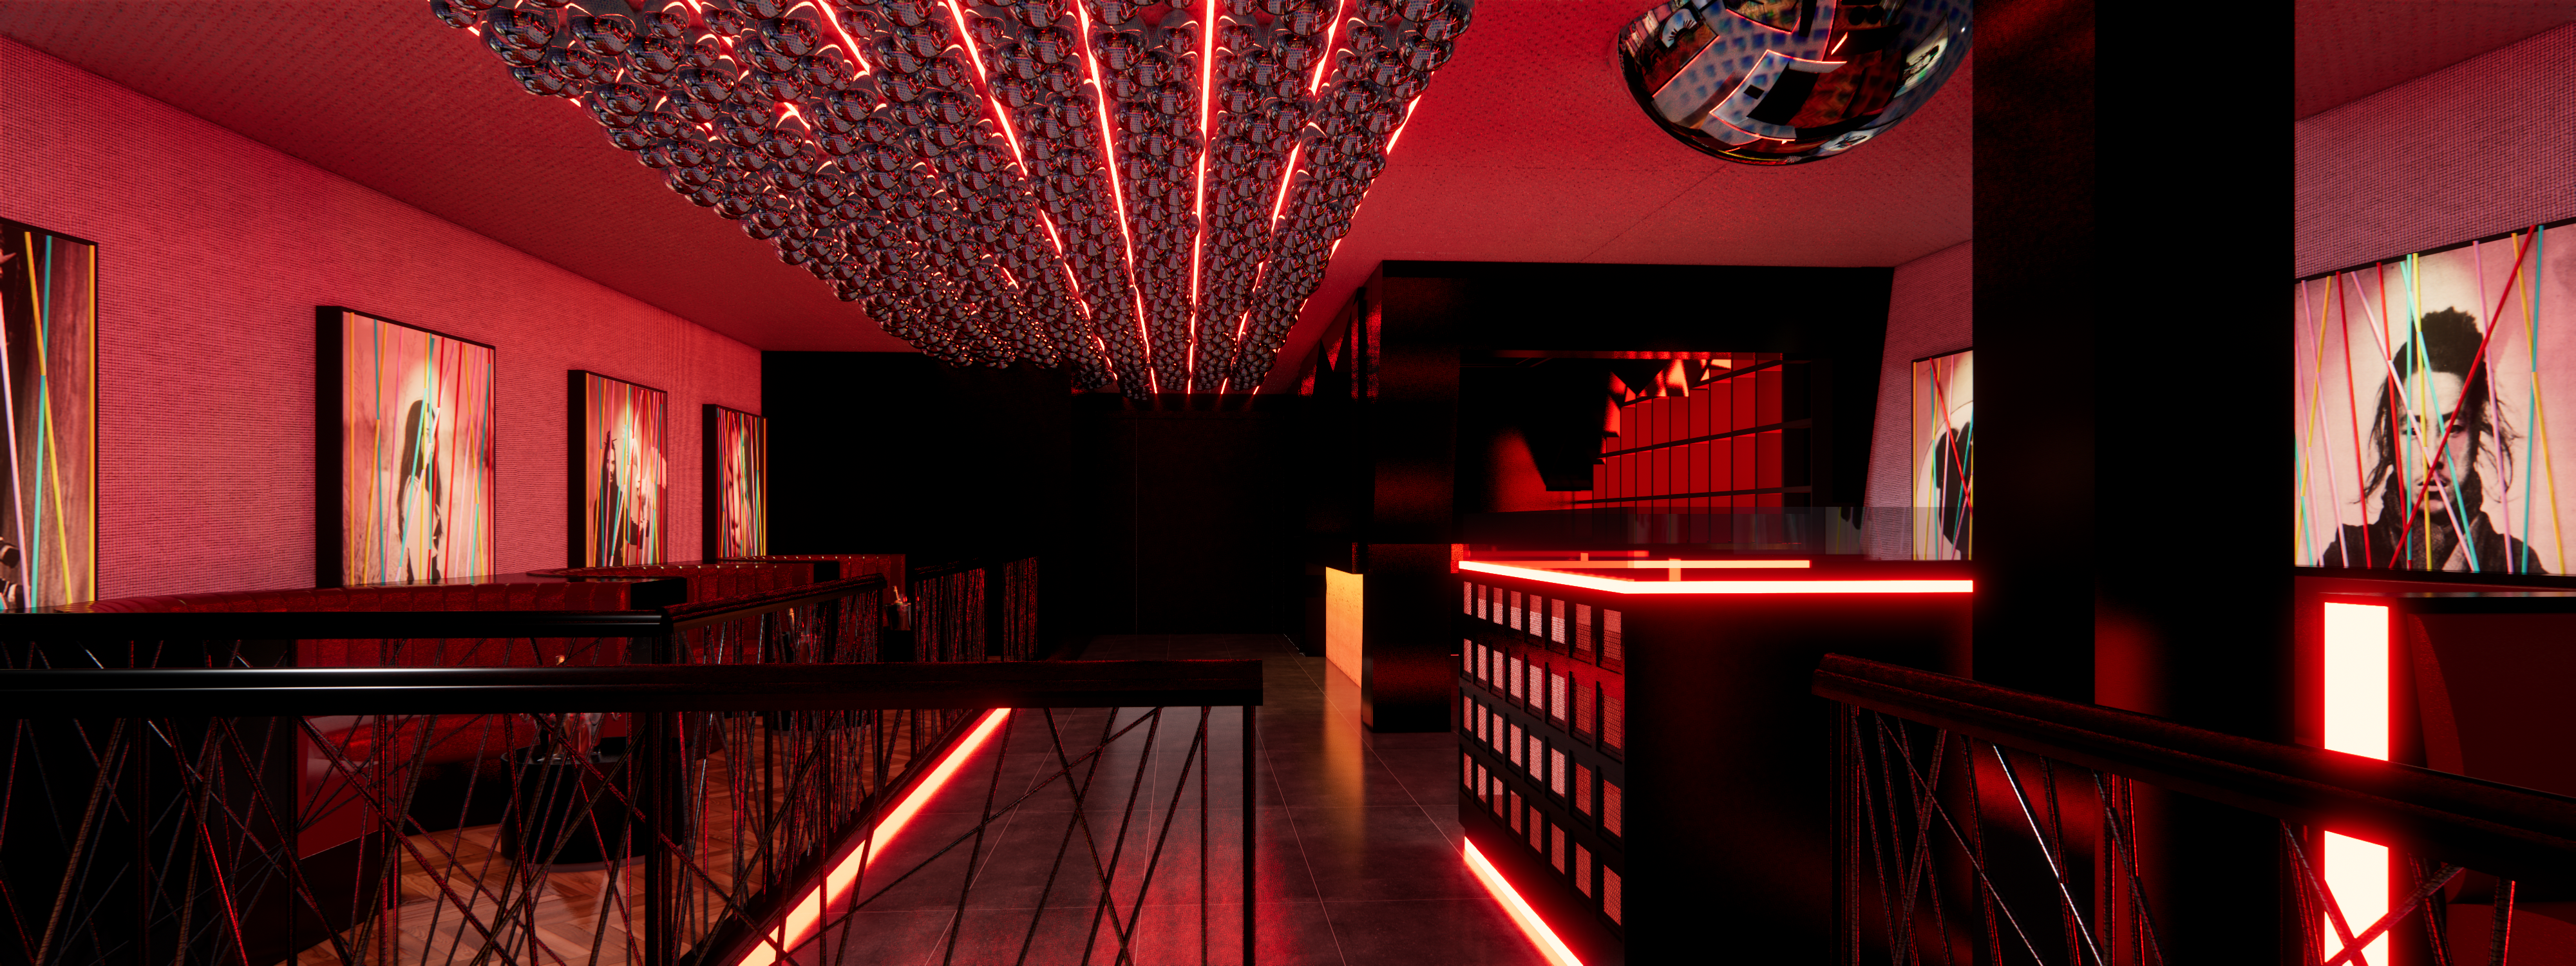 Projeção 3D exibe bar com balcão e mesas em iluminação vermelha.